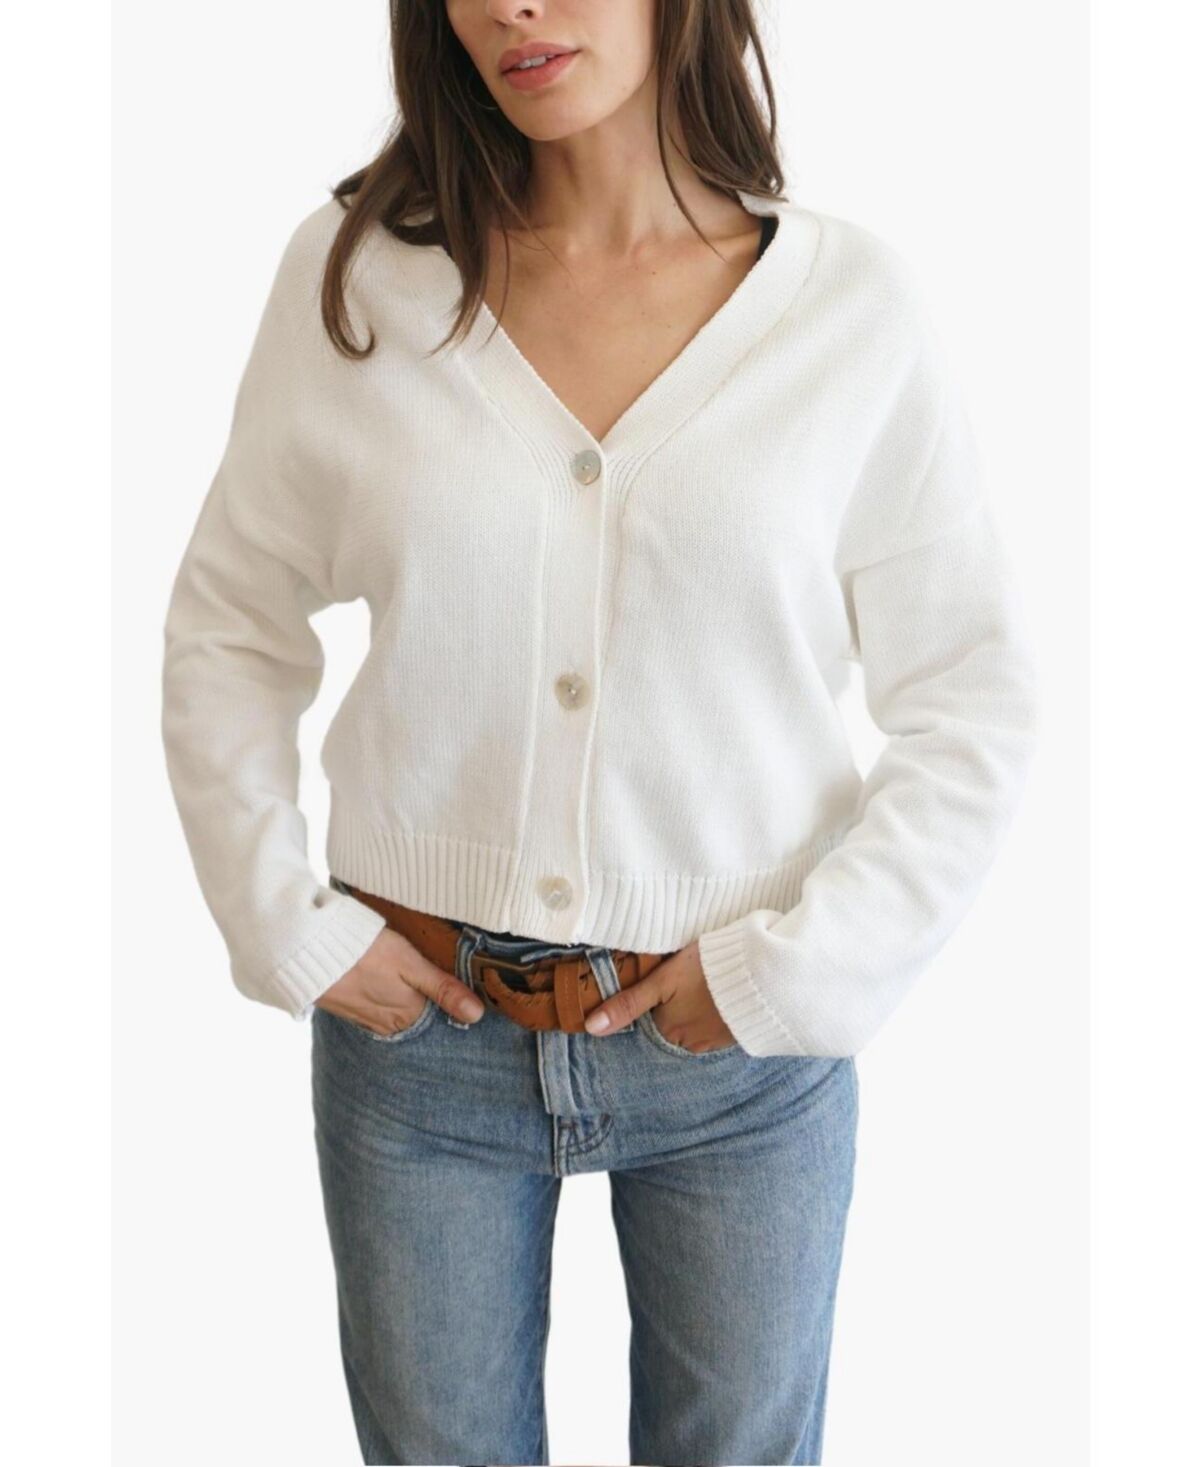 Paneros Clothing Women's Cotton Diana Crop Cardigan Sweater - Sugar white